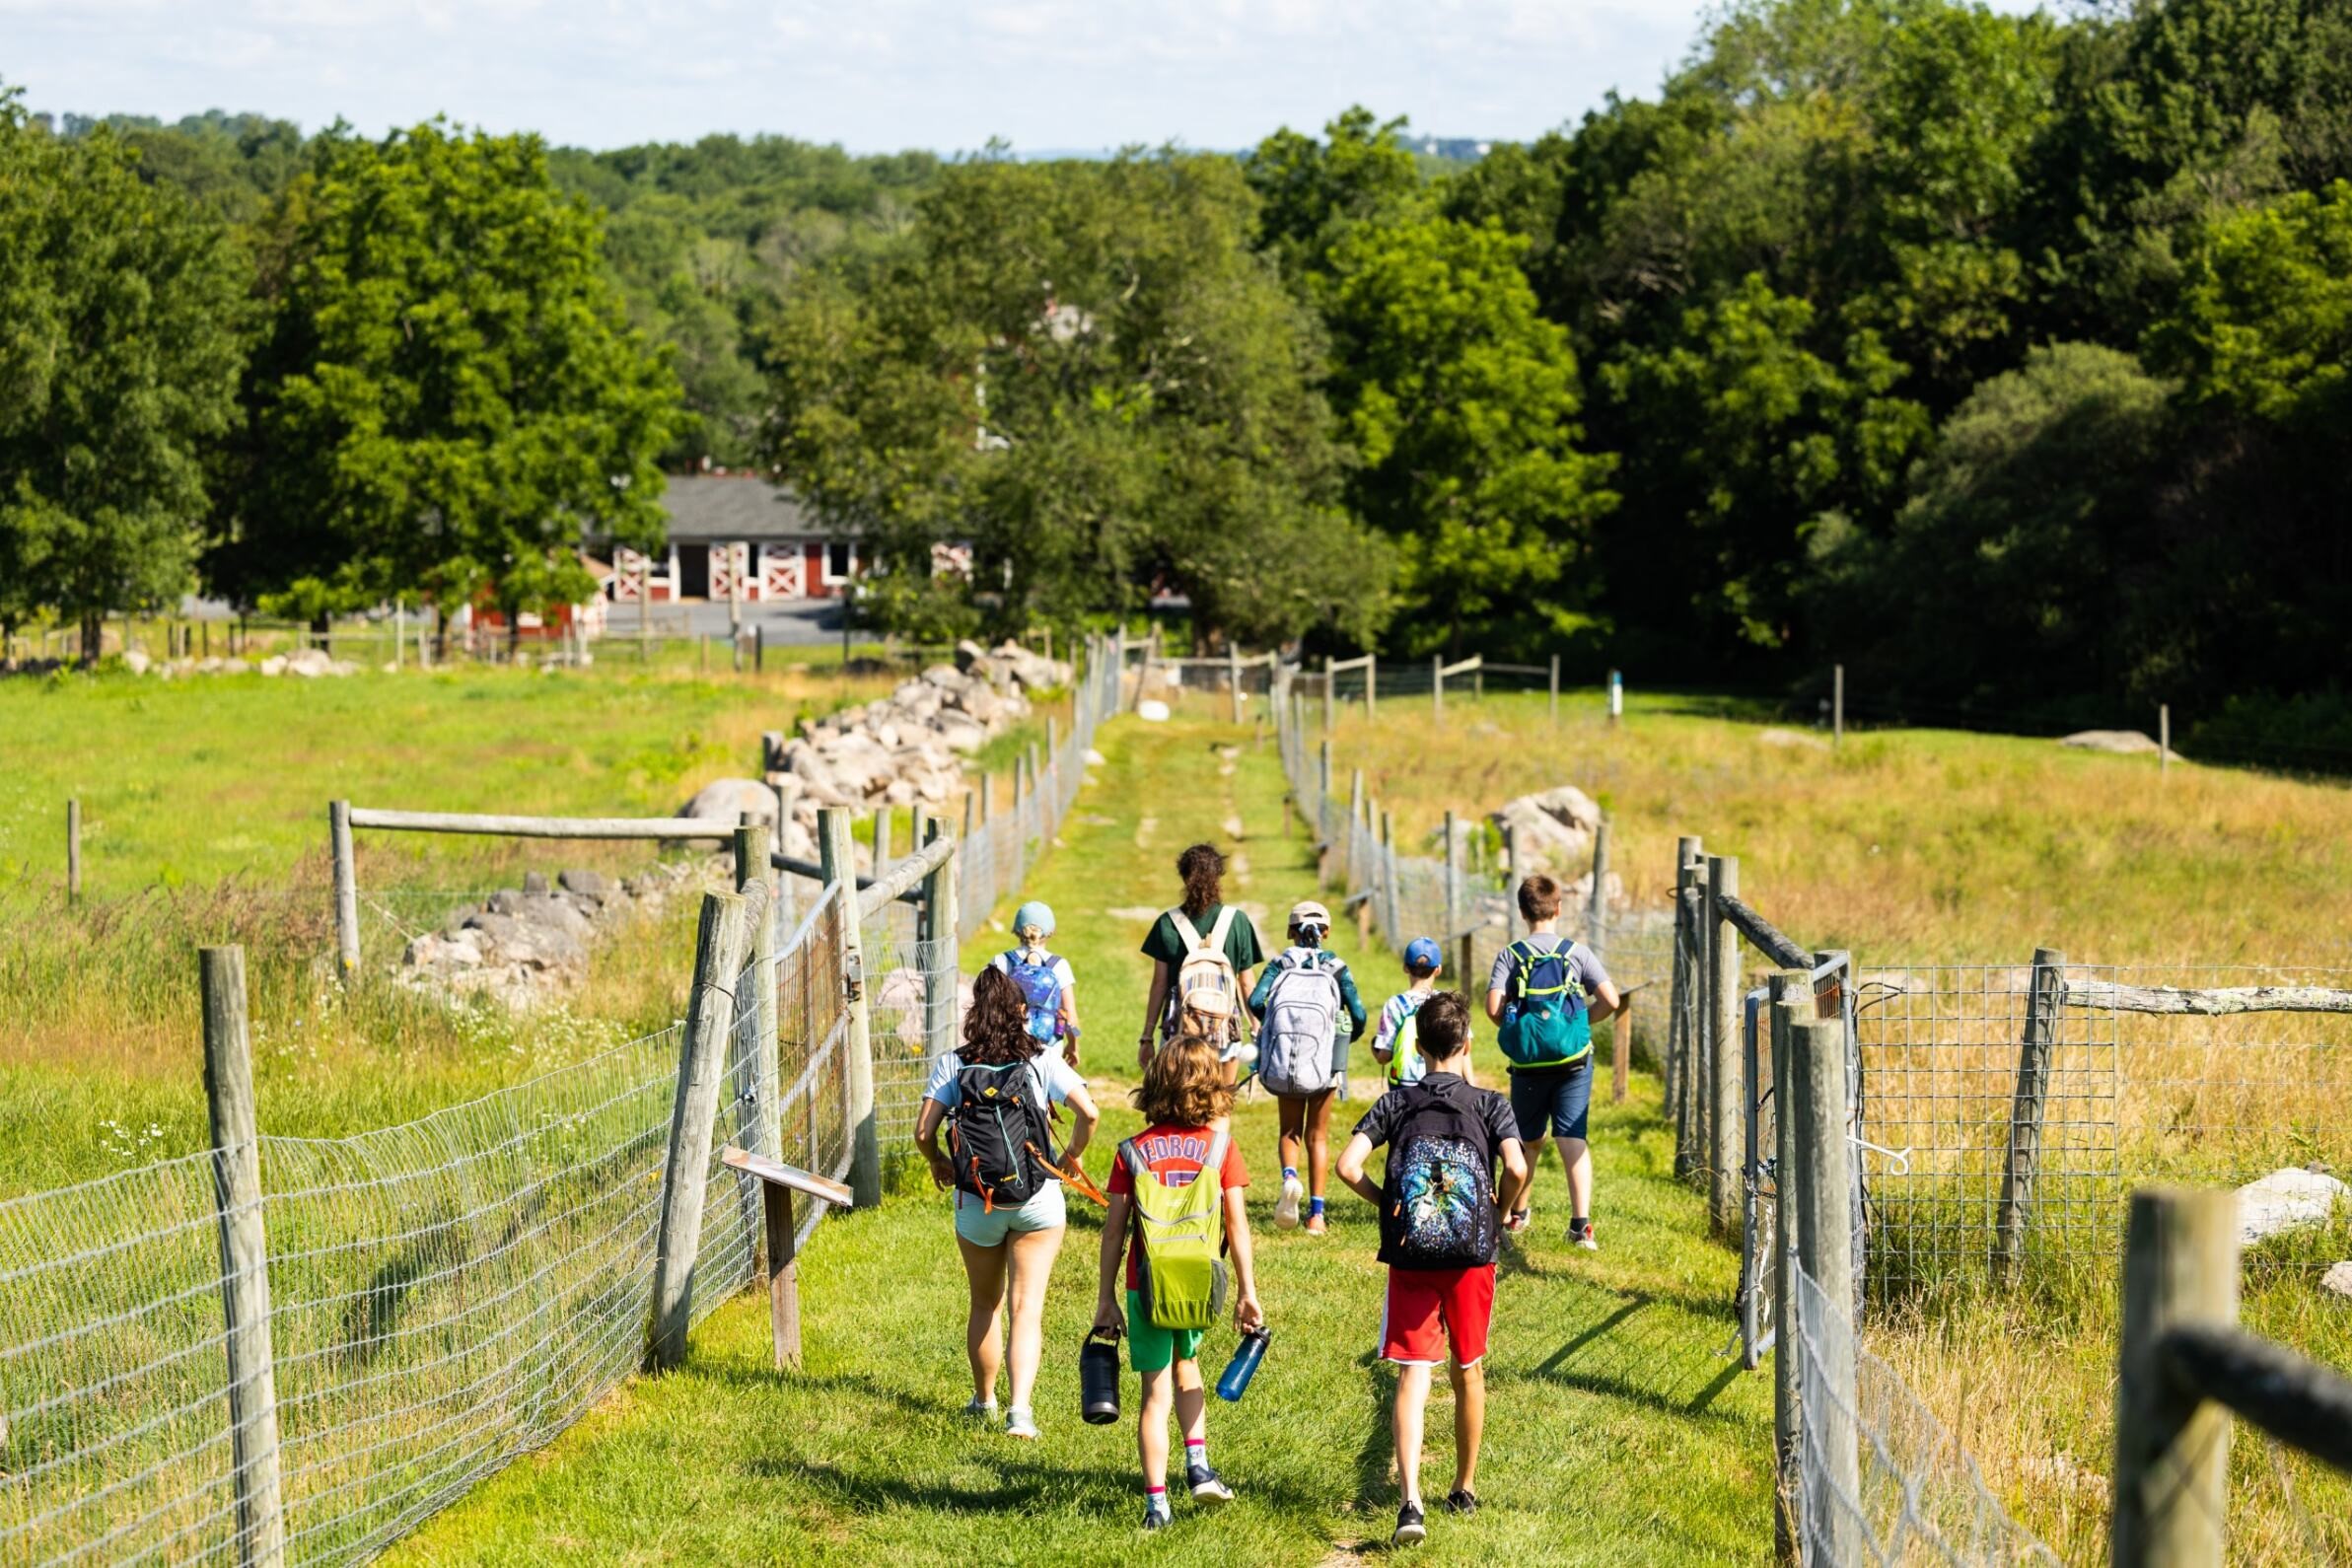 Children walk down a farm path